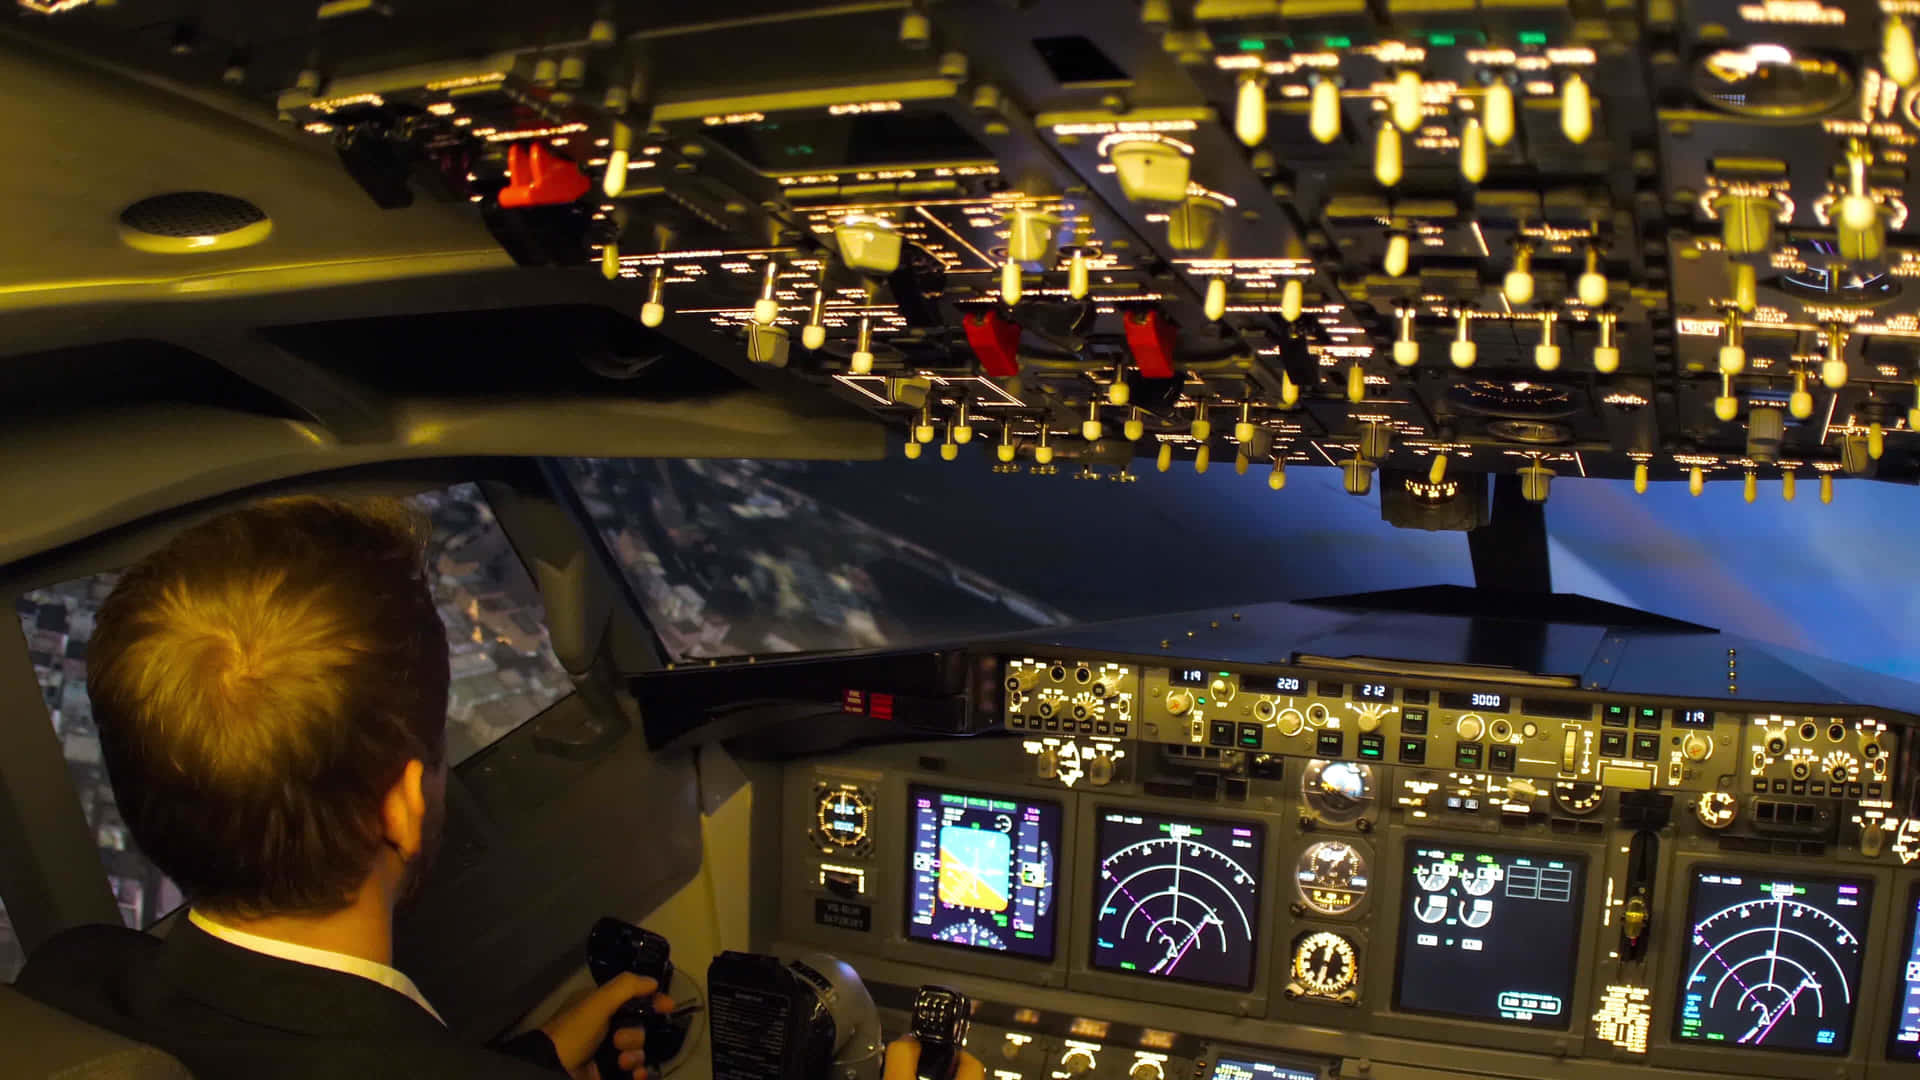 Pilotnavigiert Im Inneren Des Flugzeugs Bei Nacht. Wallpaper